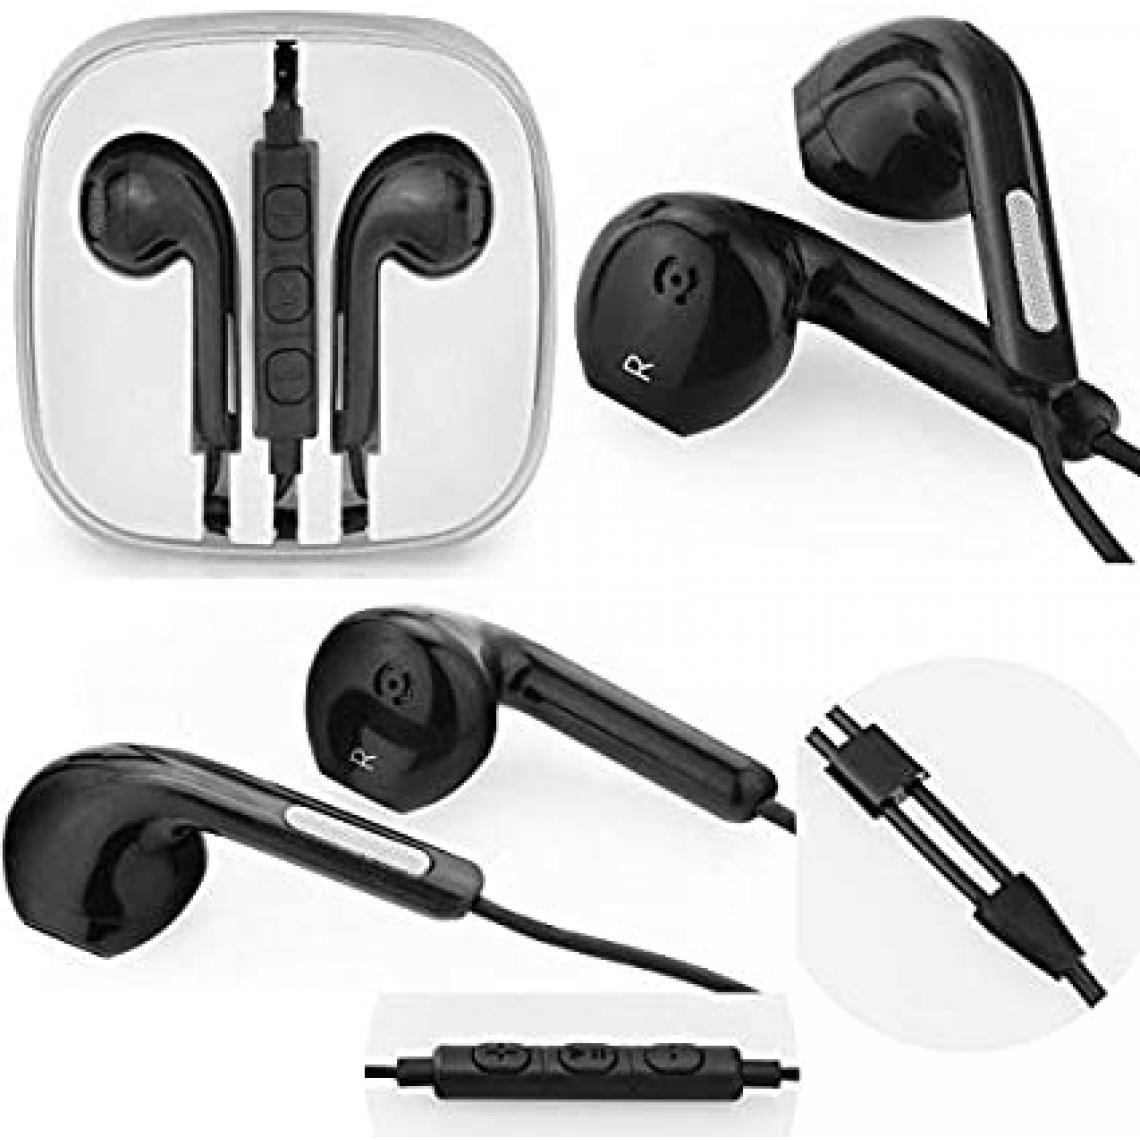 Ozzzo - Kit pieton + ecouteur + micro ozzzo noir pour Huawei P40 Lite - Ecouteurs intra-auriculaires